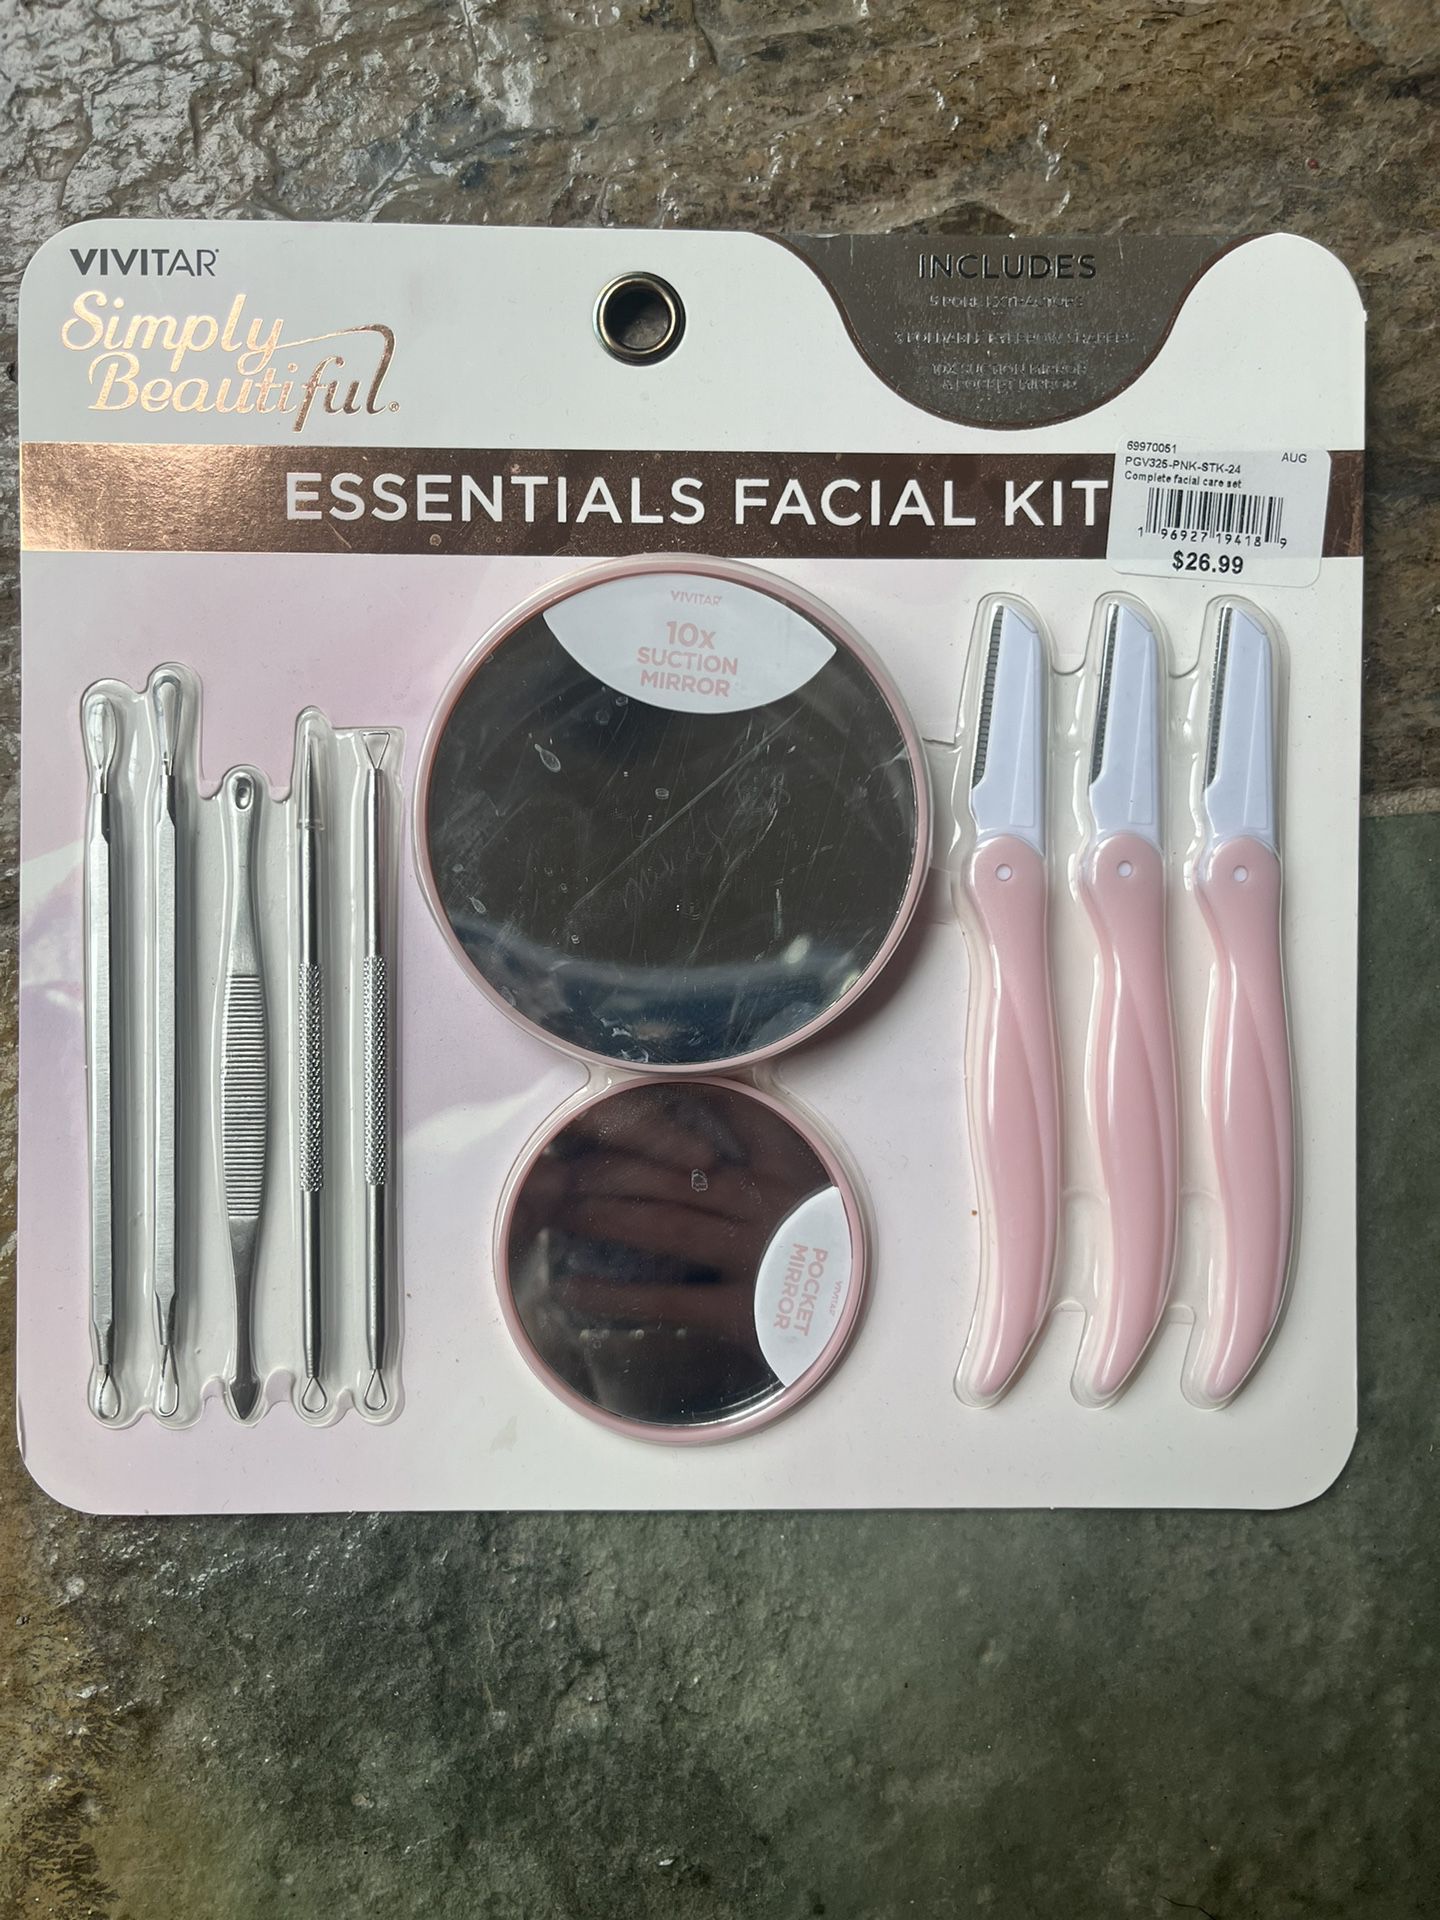 Facial tools